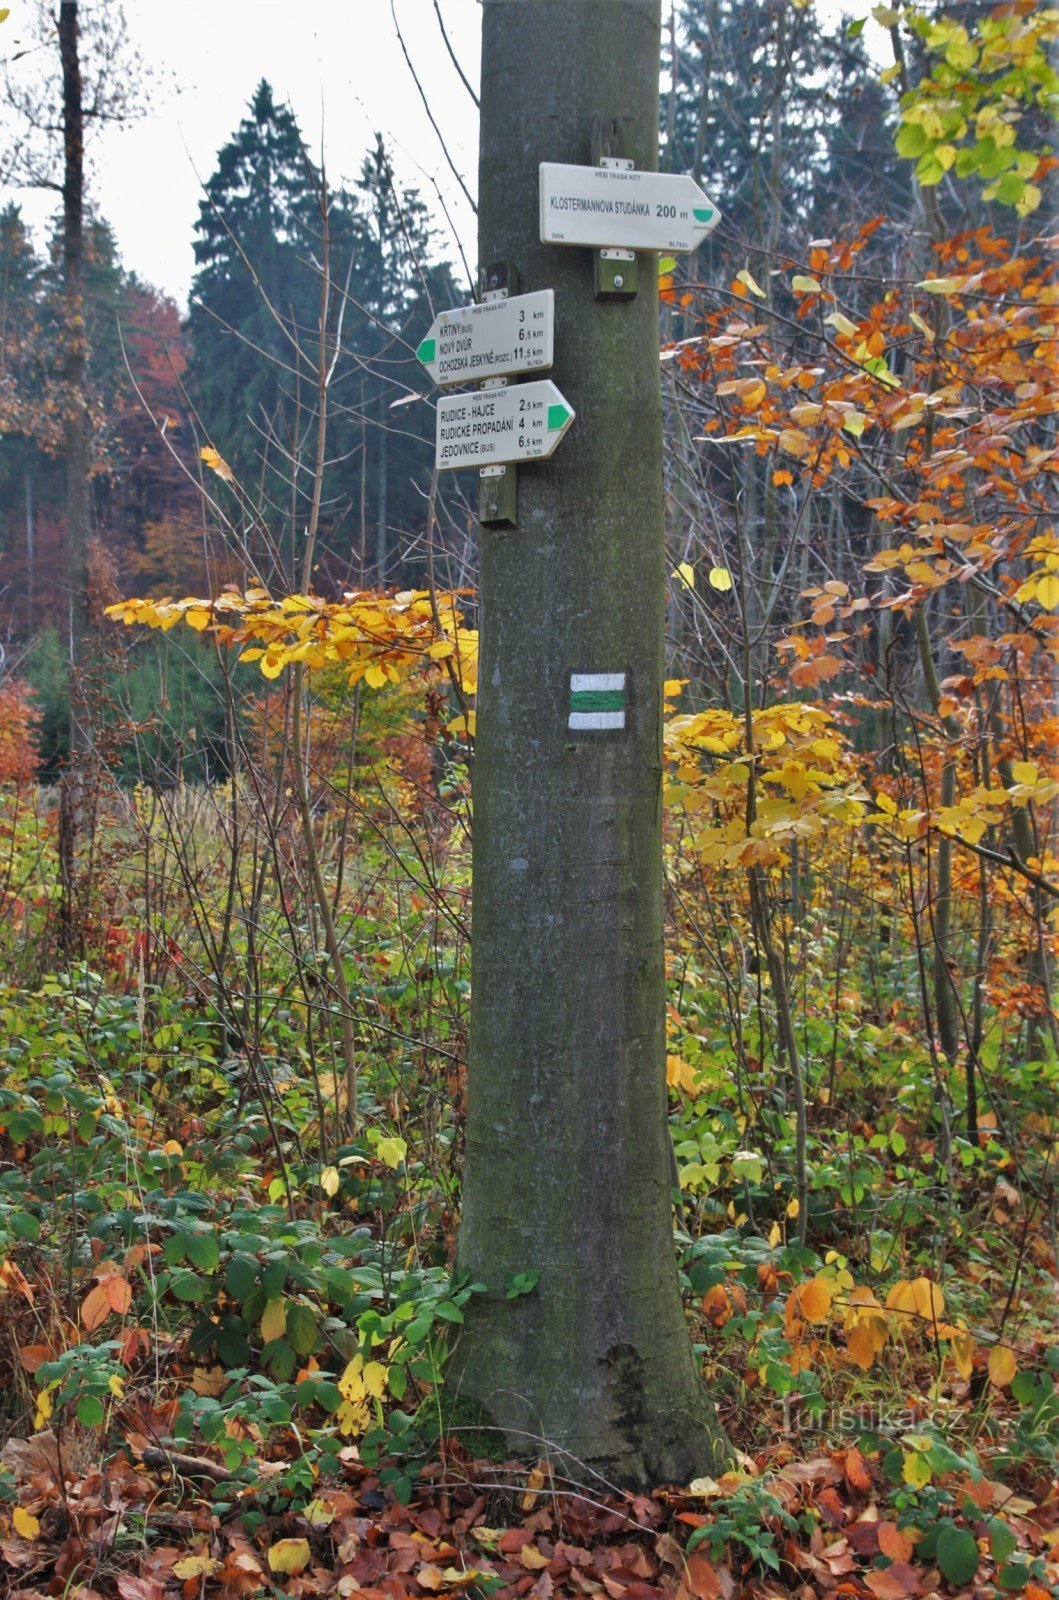 Cruce turístico Pozo de Klostermann, sucursal